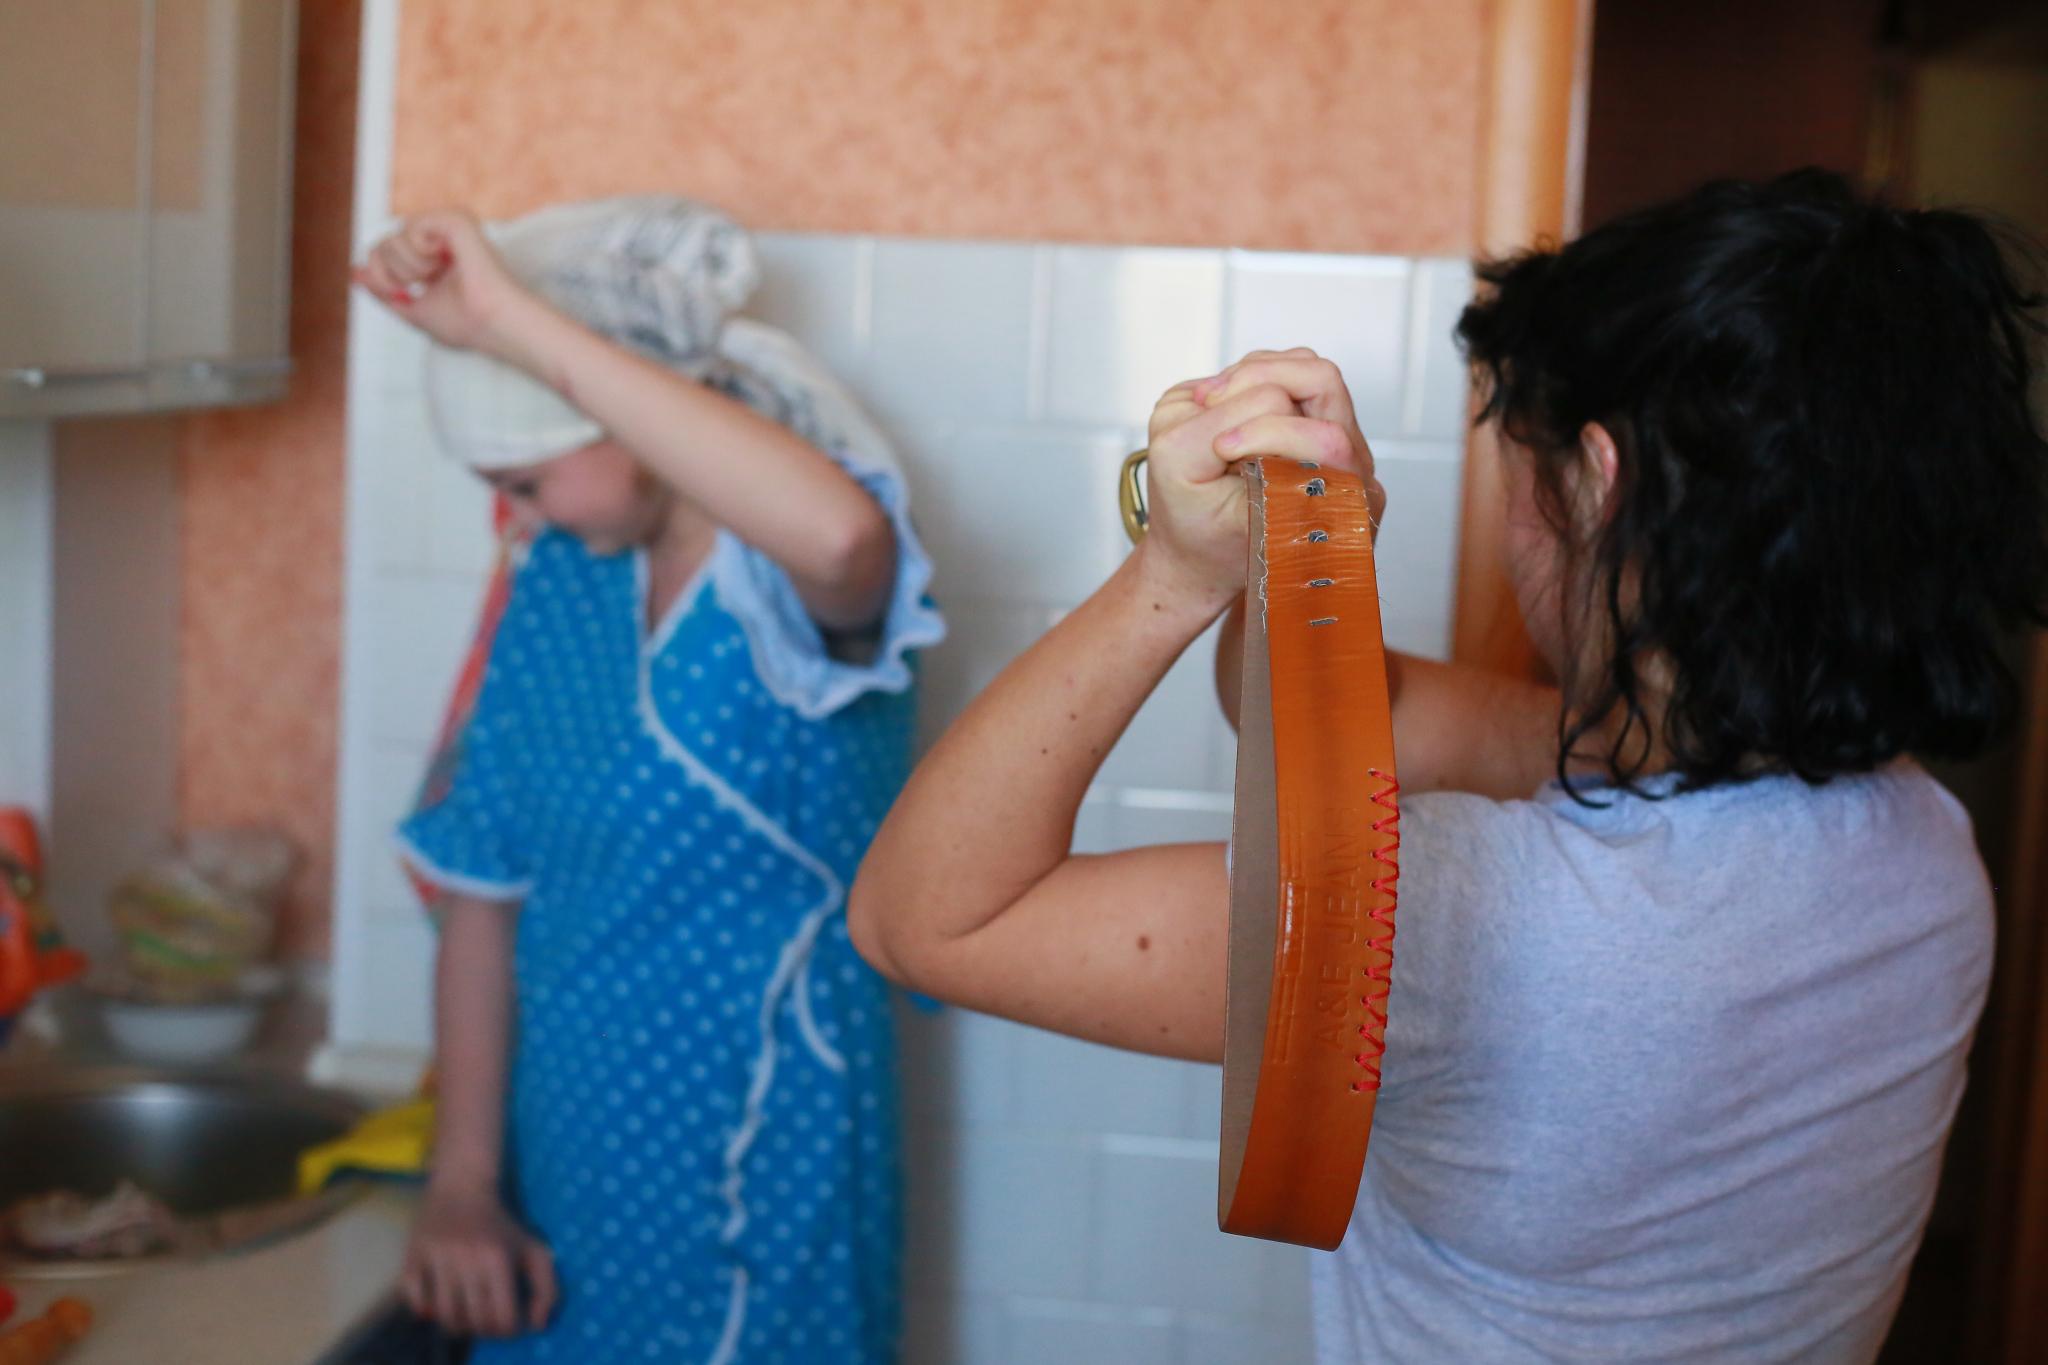 Страшась матери, девочка из Пензенской области учила уроки в туалете